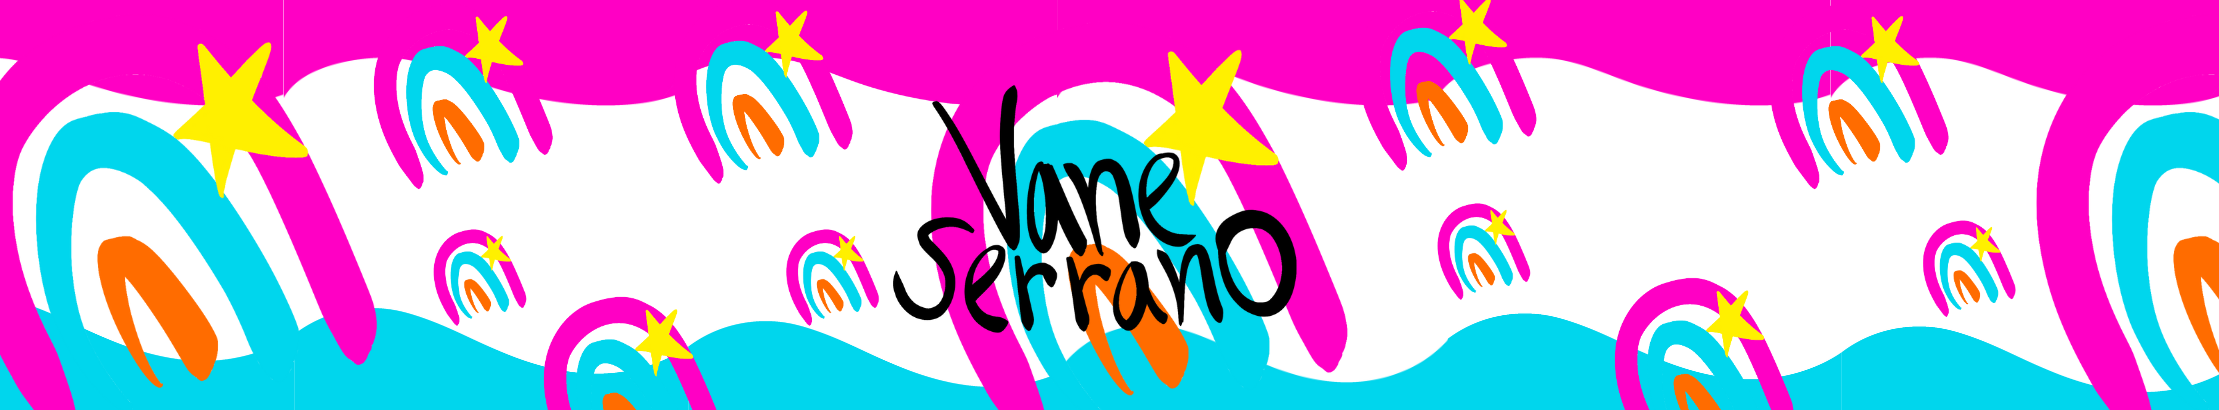 Bannière de profil de Vane Serrano